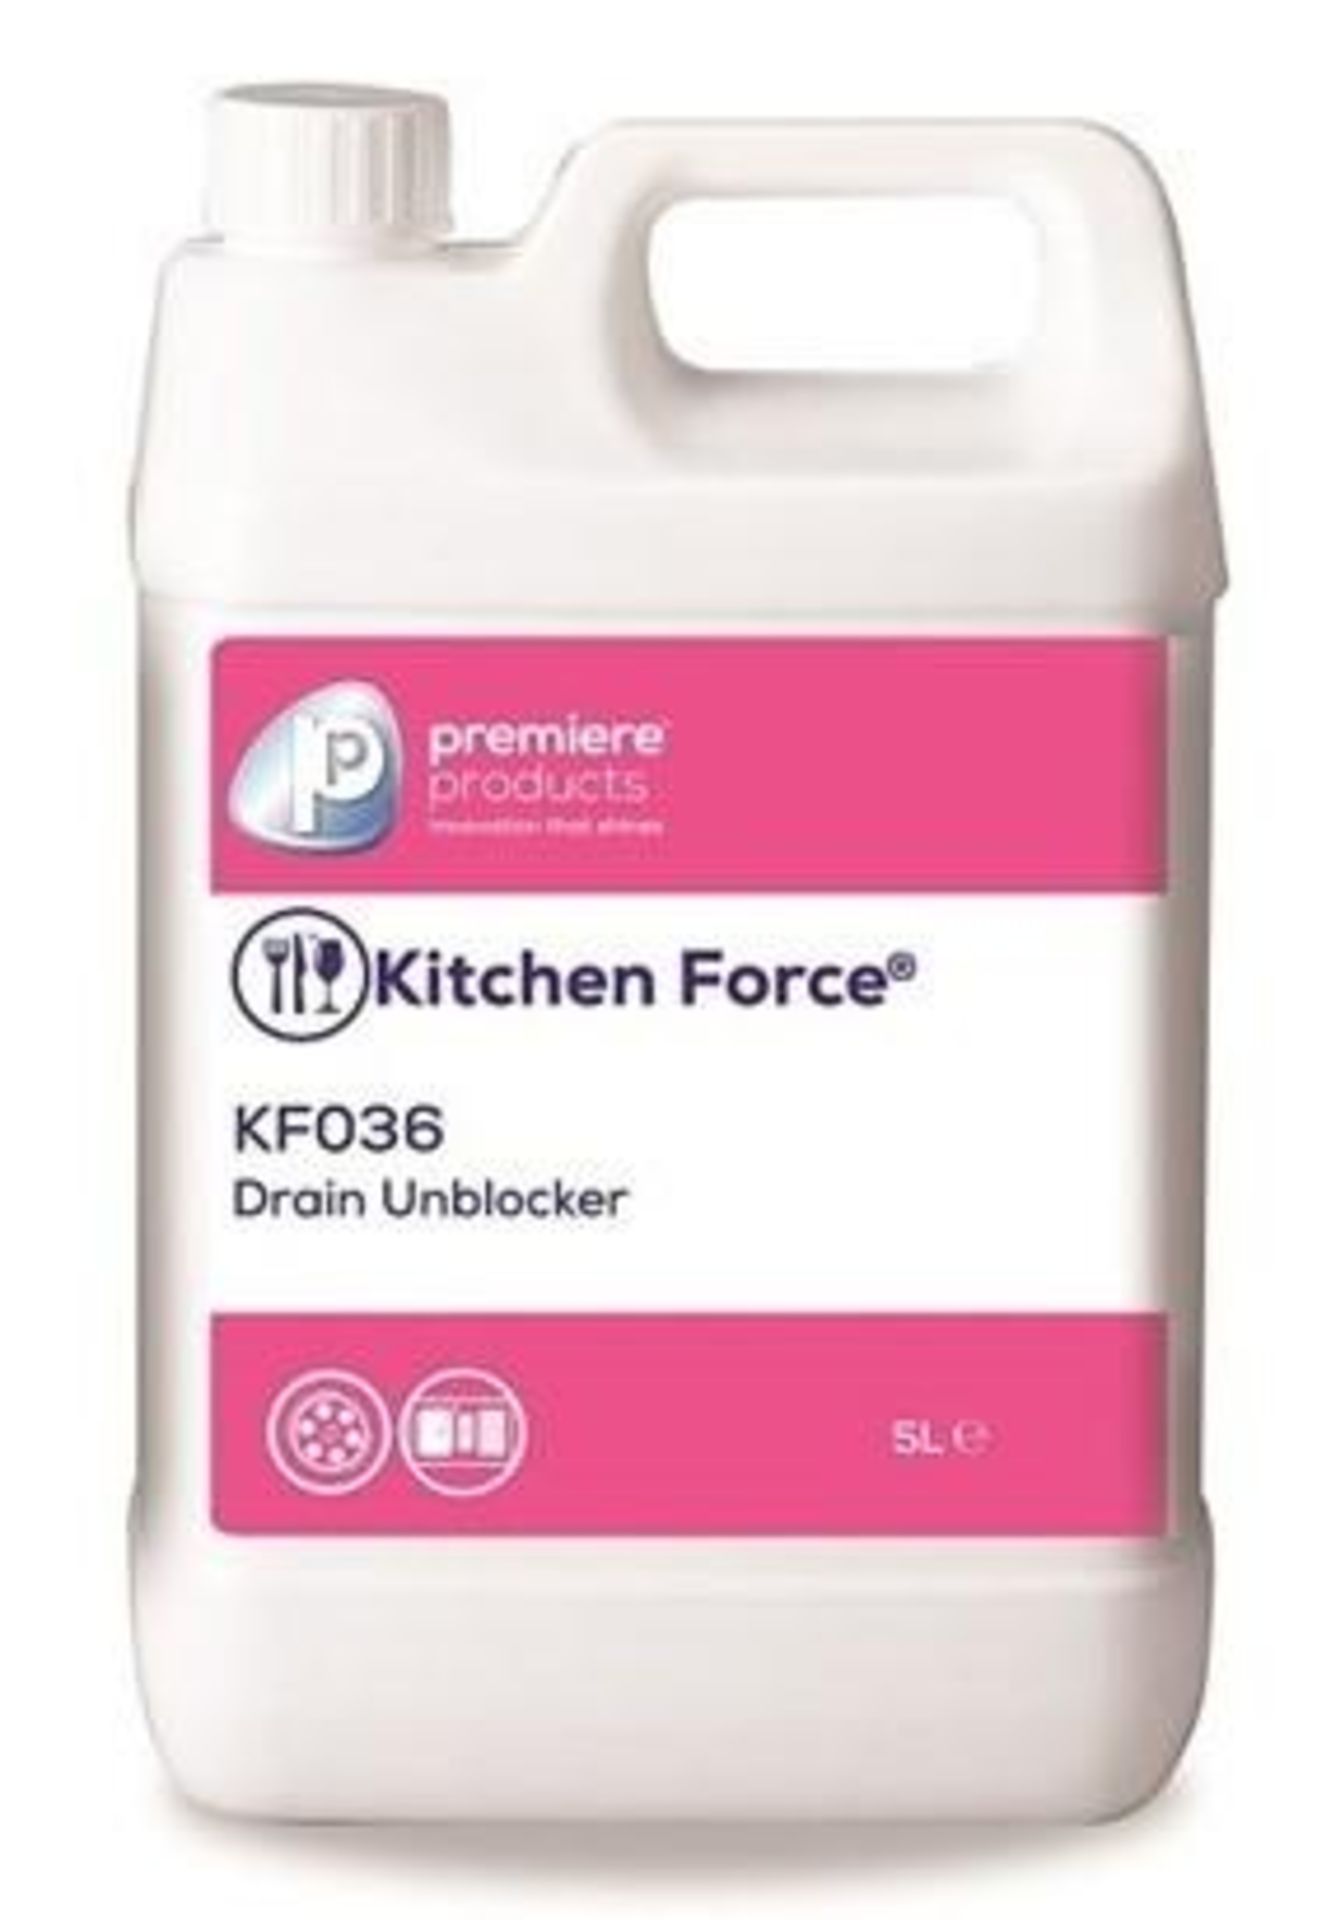 10 x Kitchen Force 5 Litre Drain Unblocker - Premiere Products - Rapidly Breaks Down Blockages